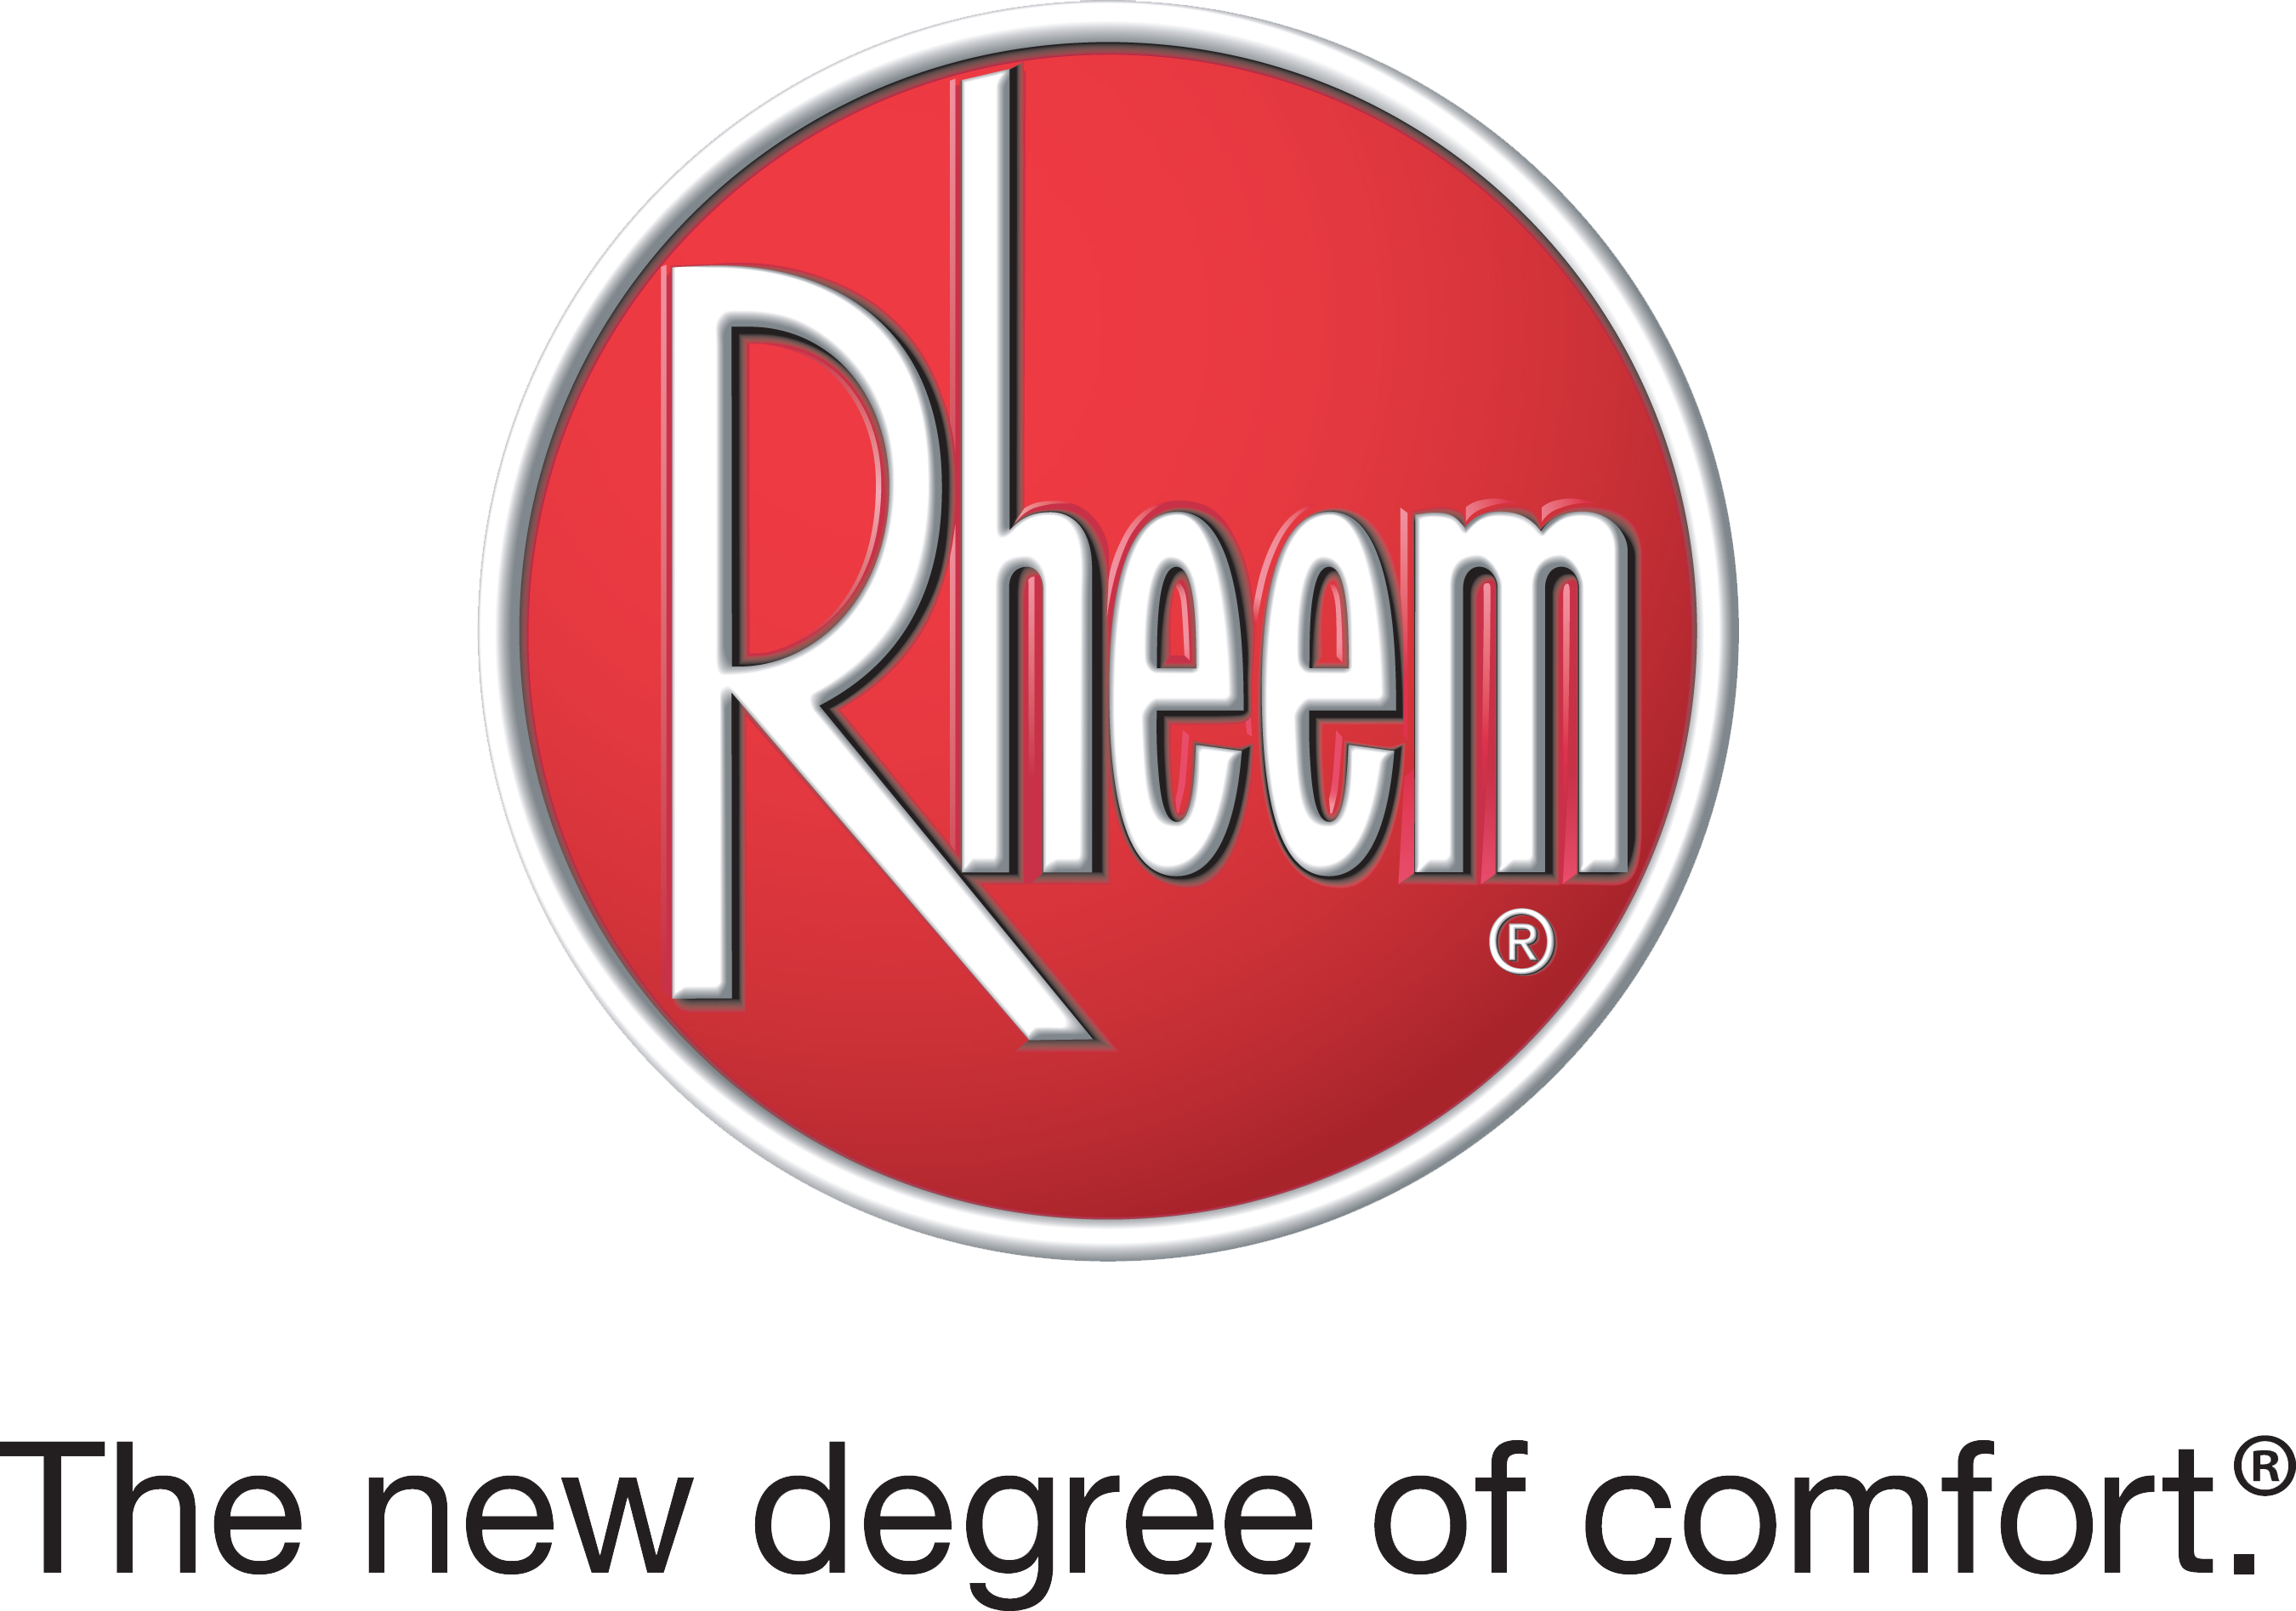 Rheem is a proud sponser of Women In HVACR.